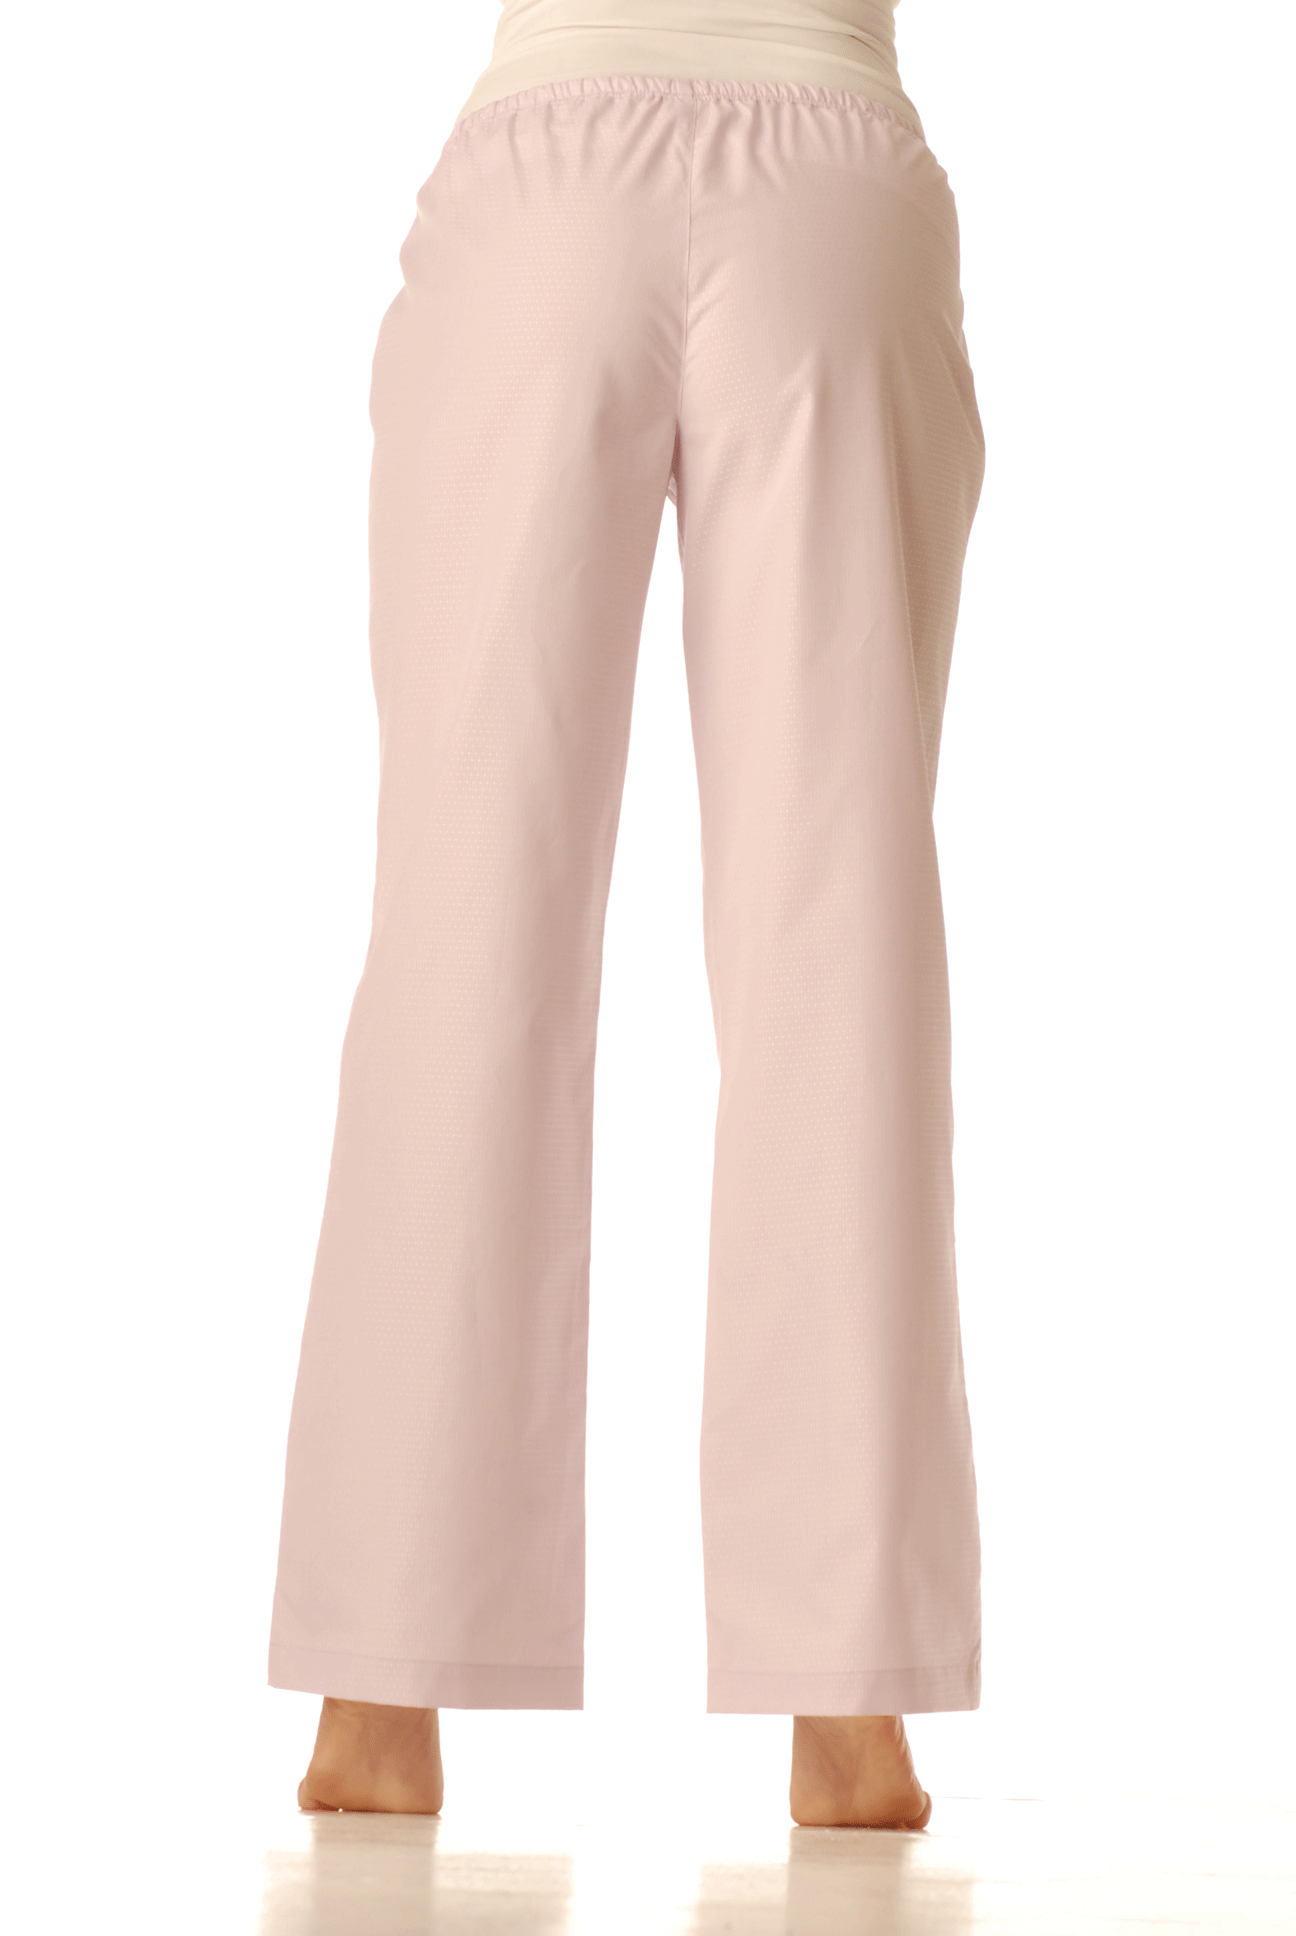 Pyžamové kalhoty - Fialky světlé